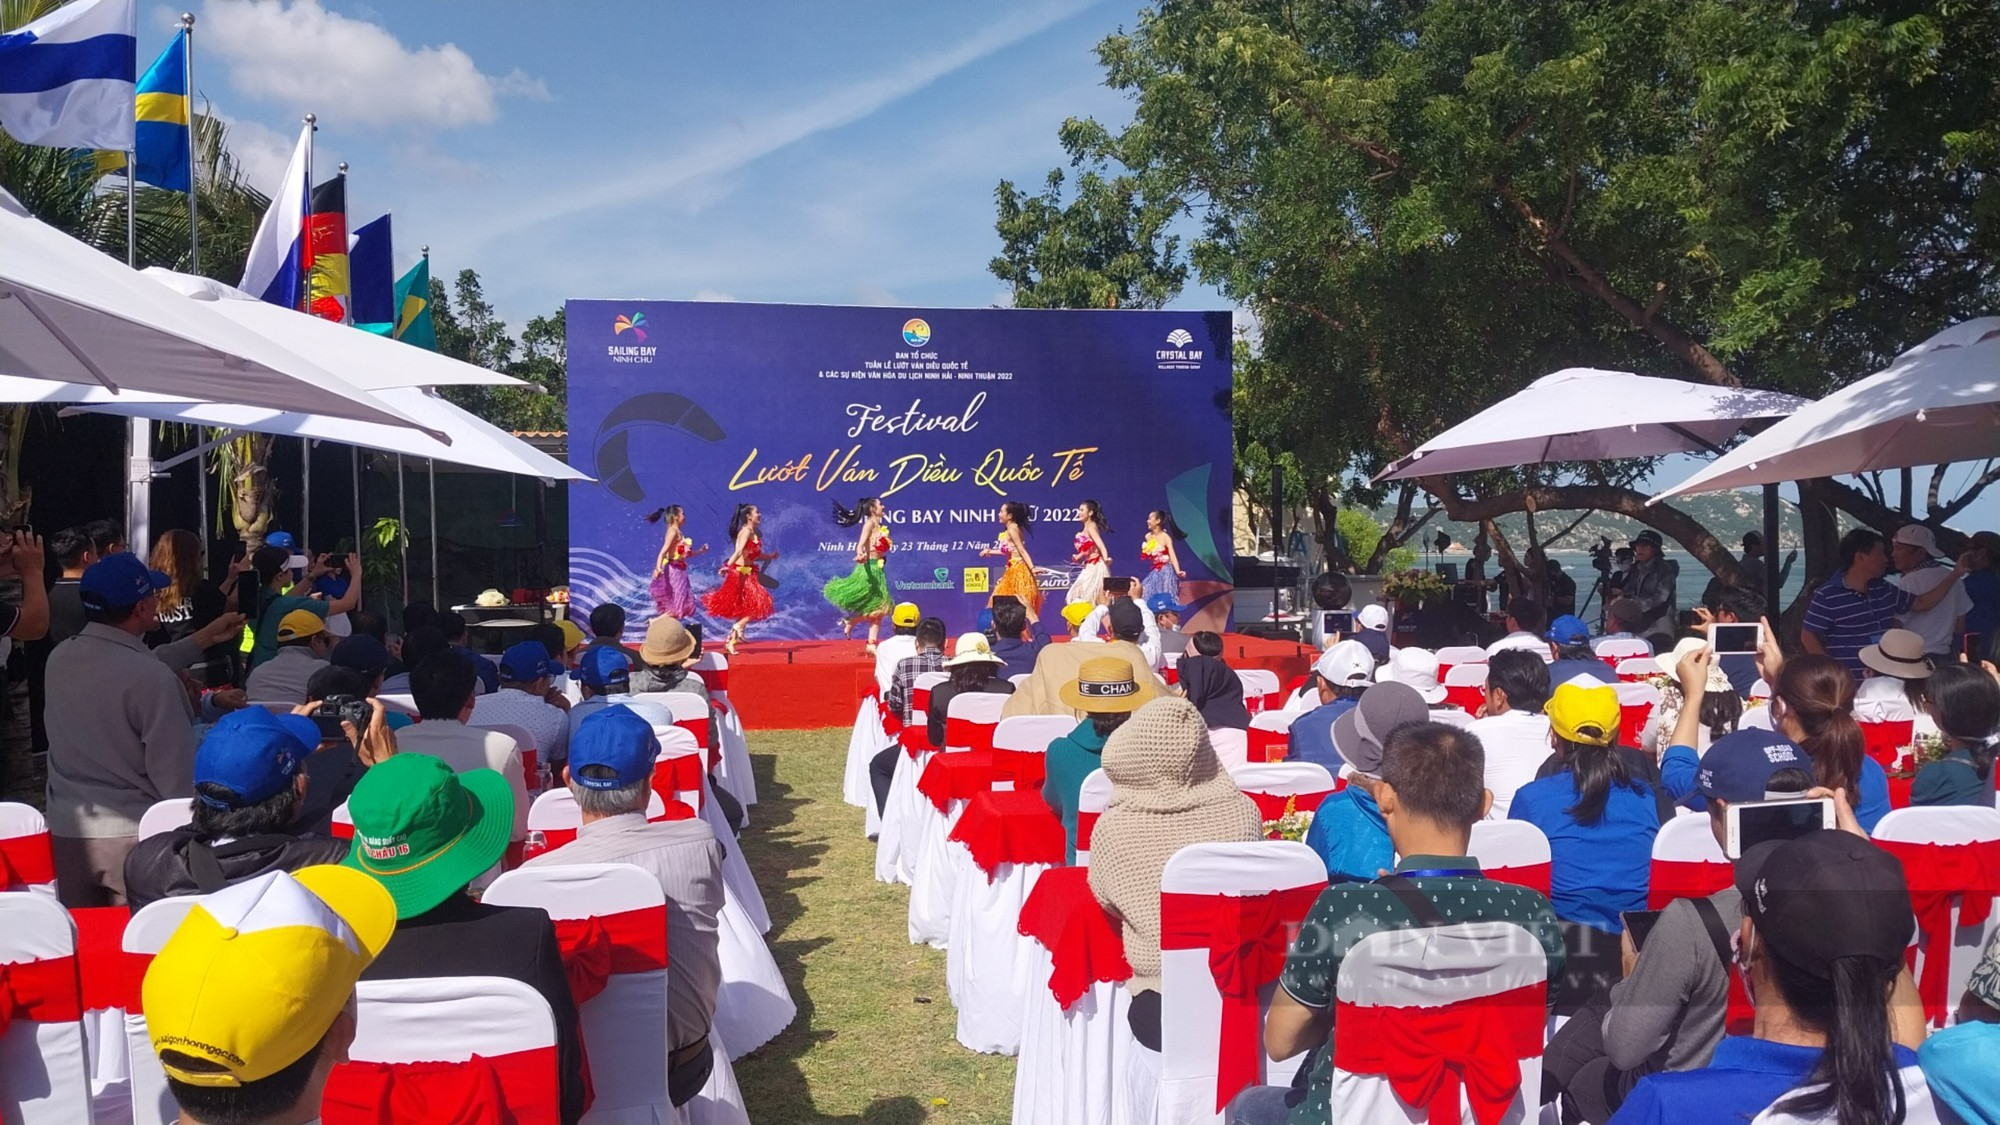 “Mãn nhãn” với bức tranh đầy màu sắc Festival lướt ván diều Quốc tế Sailing Bay Ninh Chử năm 2022 - Ảnh 5.